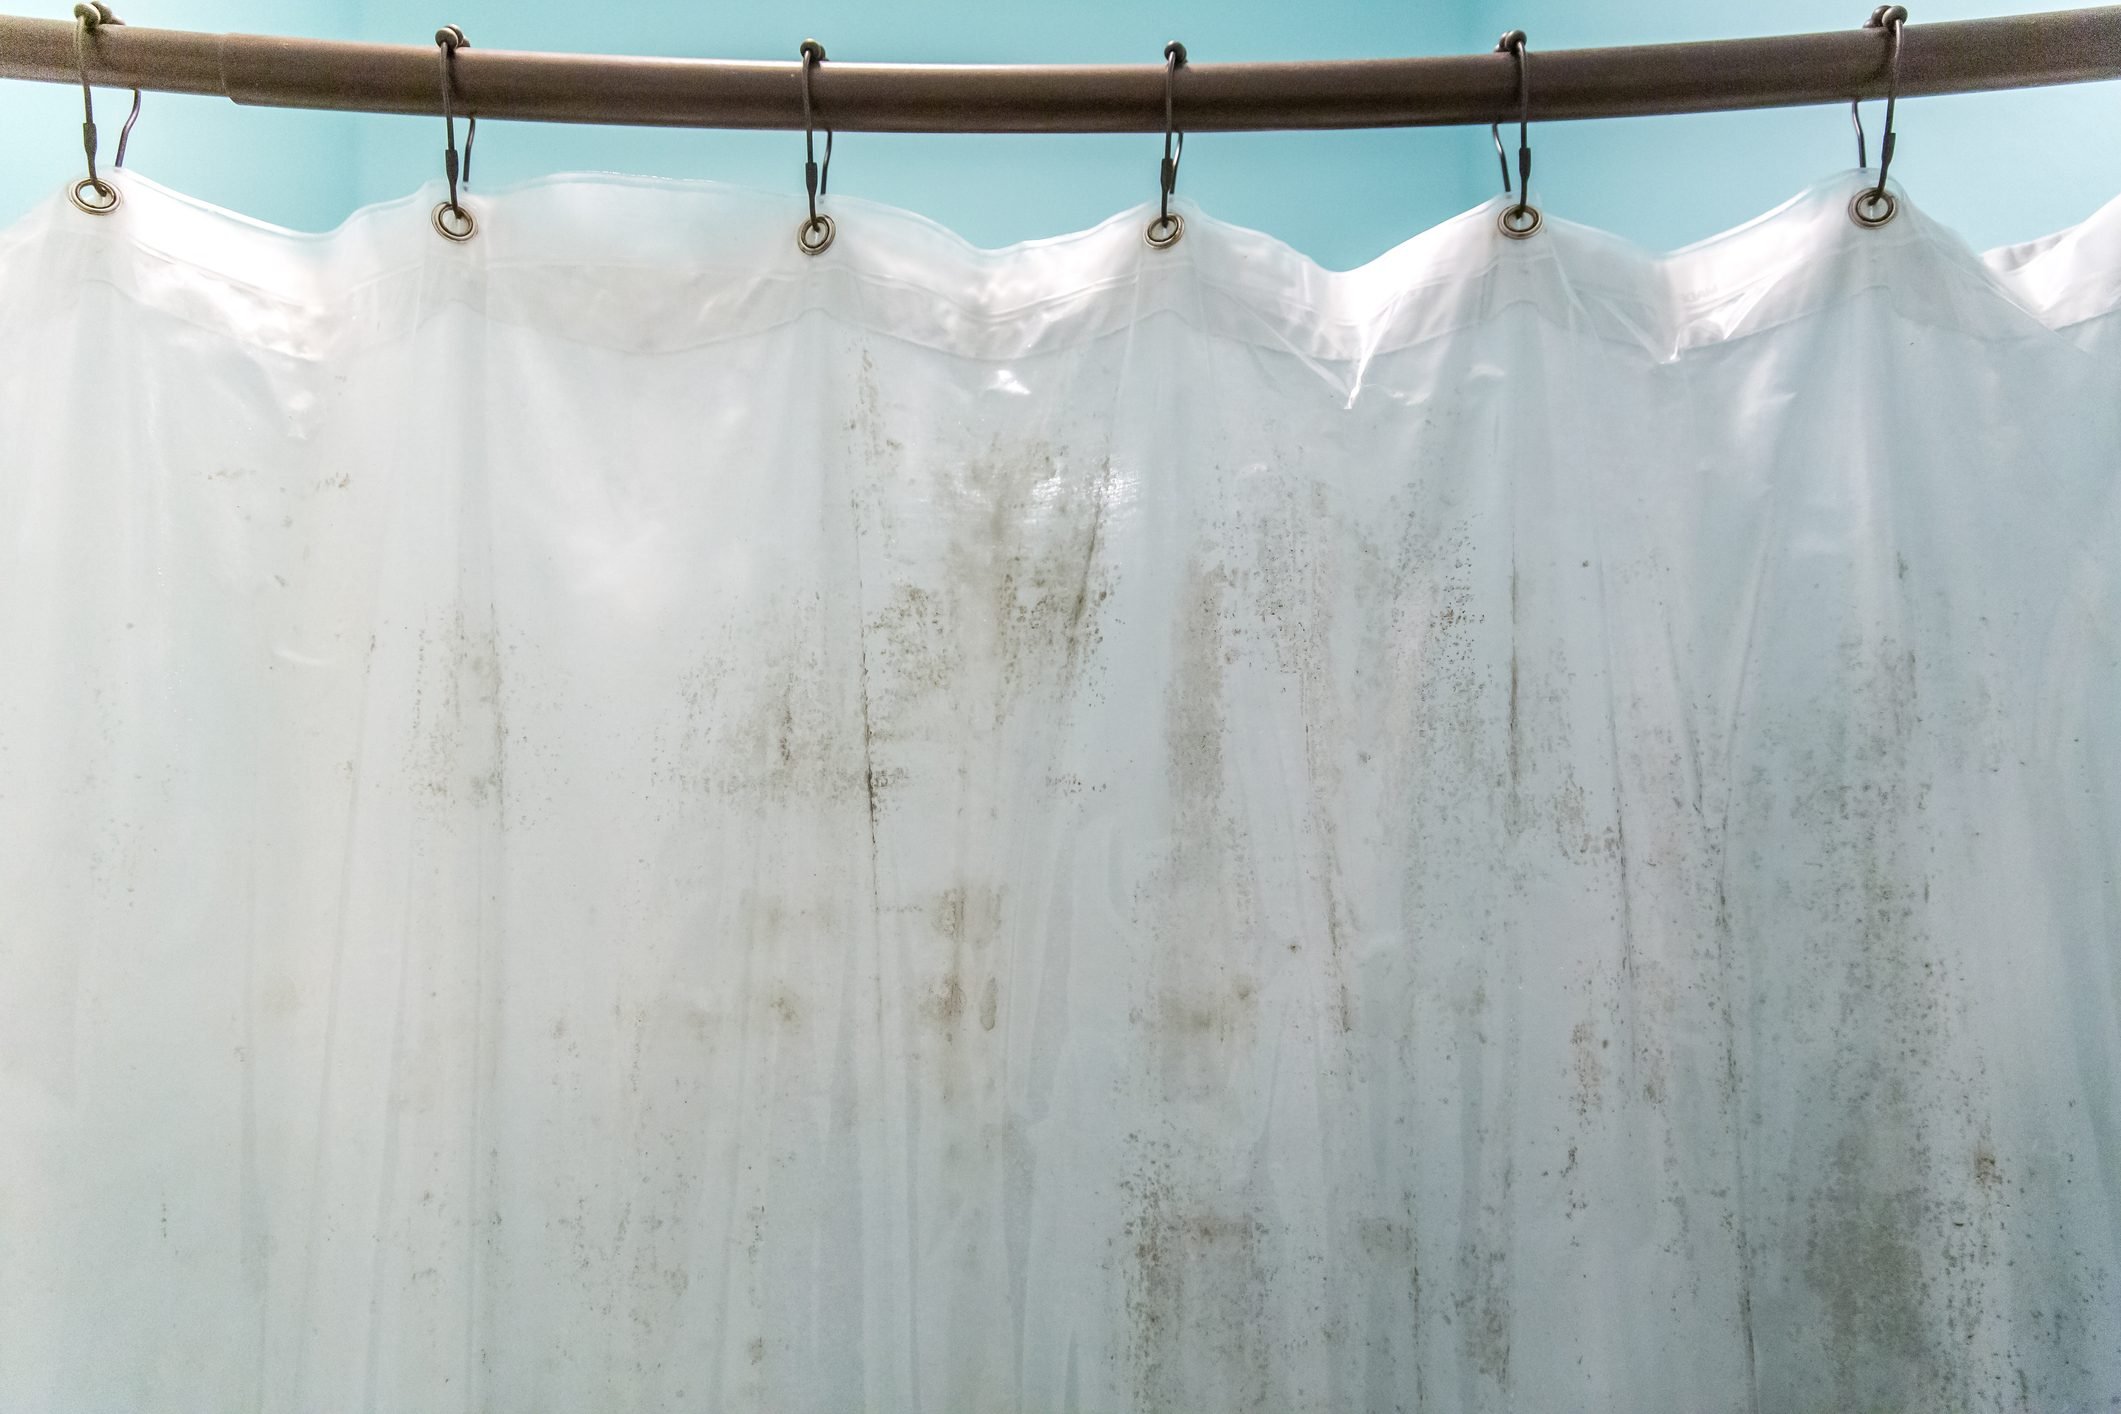 Giặt rèm nhà tắm thường xuyên để ngăn nấm mốc, giảm nguy cơ bệnh tật